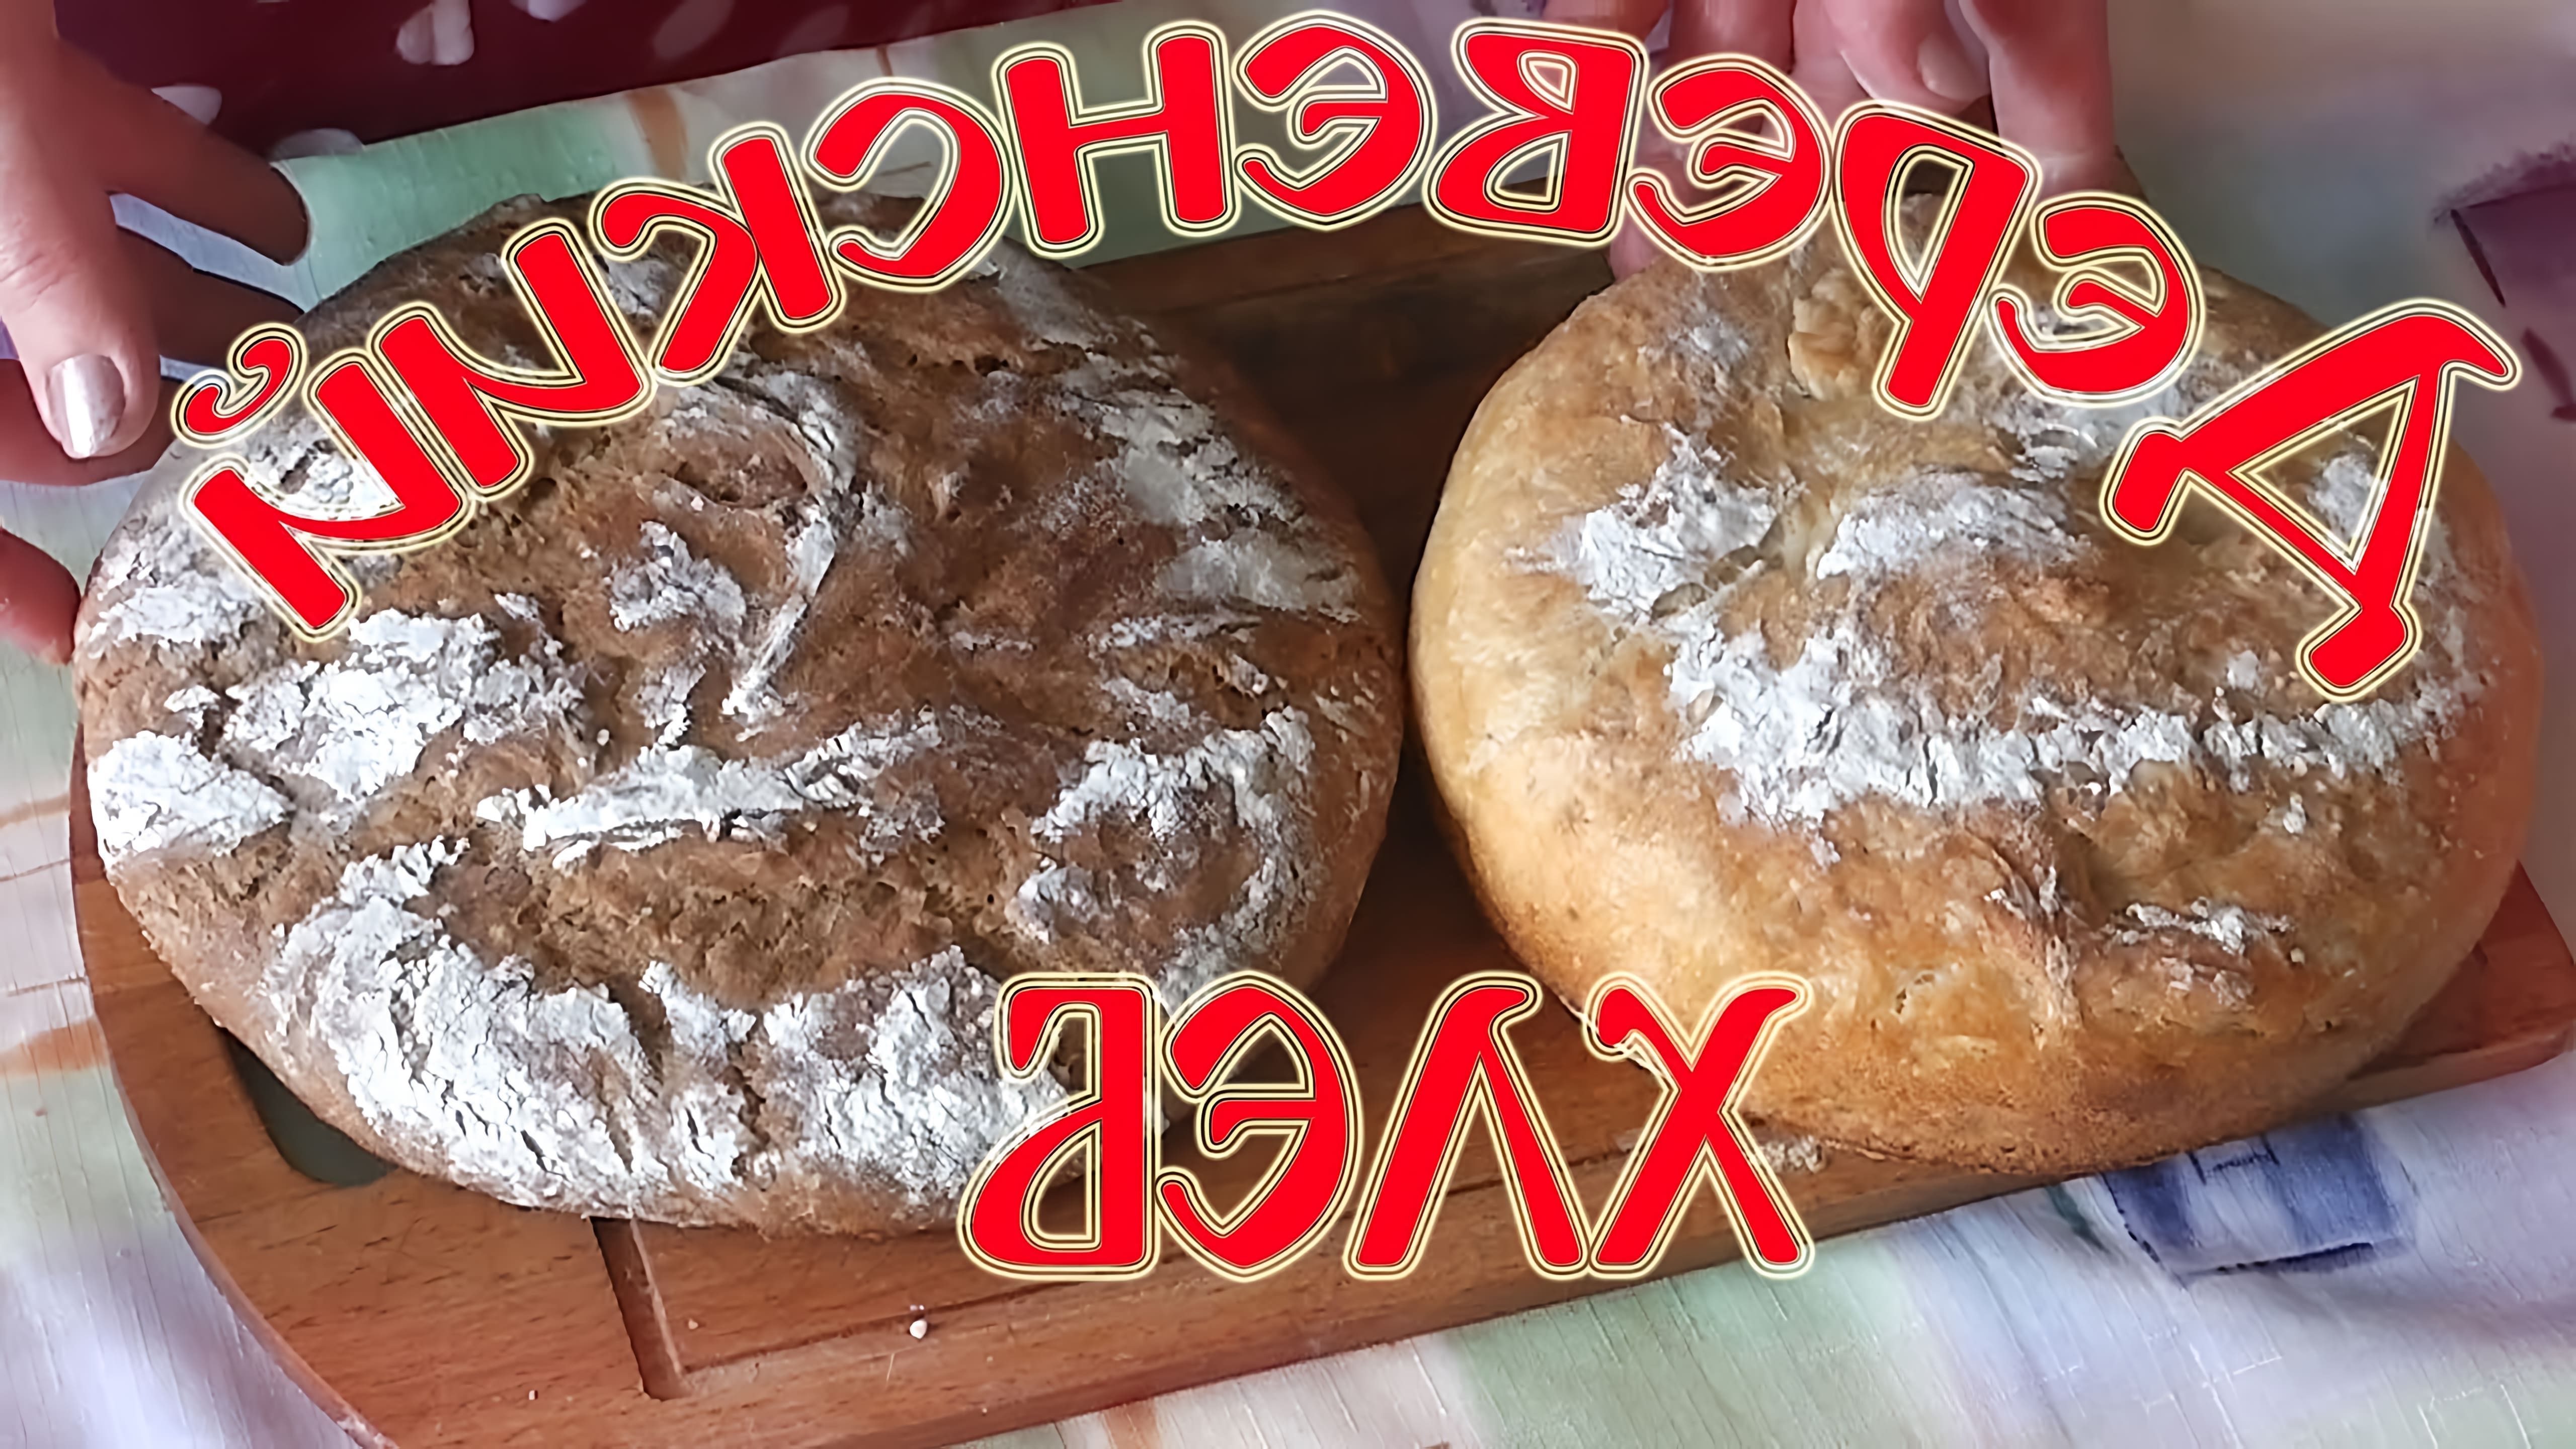 В этом видео демонстрируется процесс приготовления белого и ржаного хлеба по простому рецепту